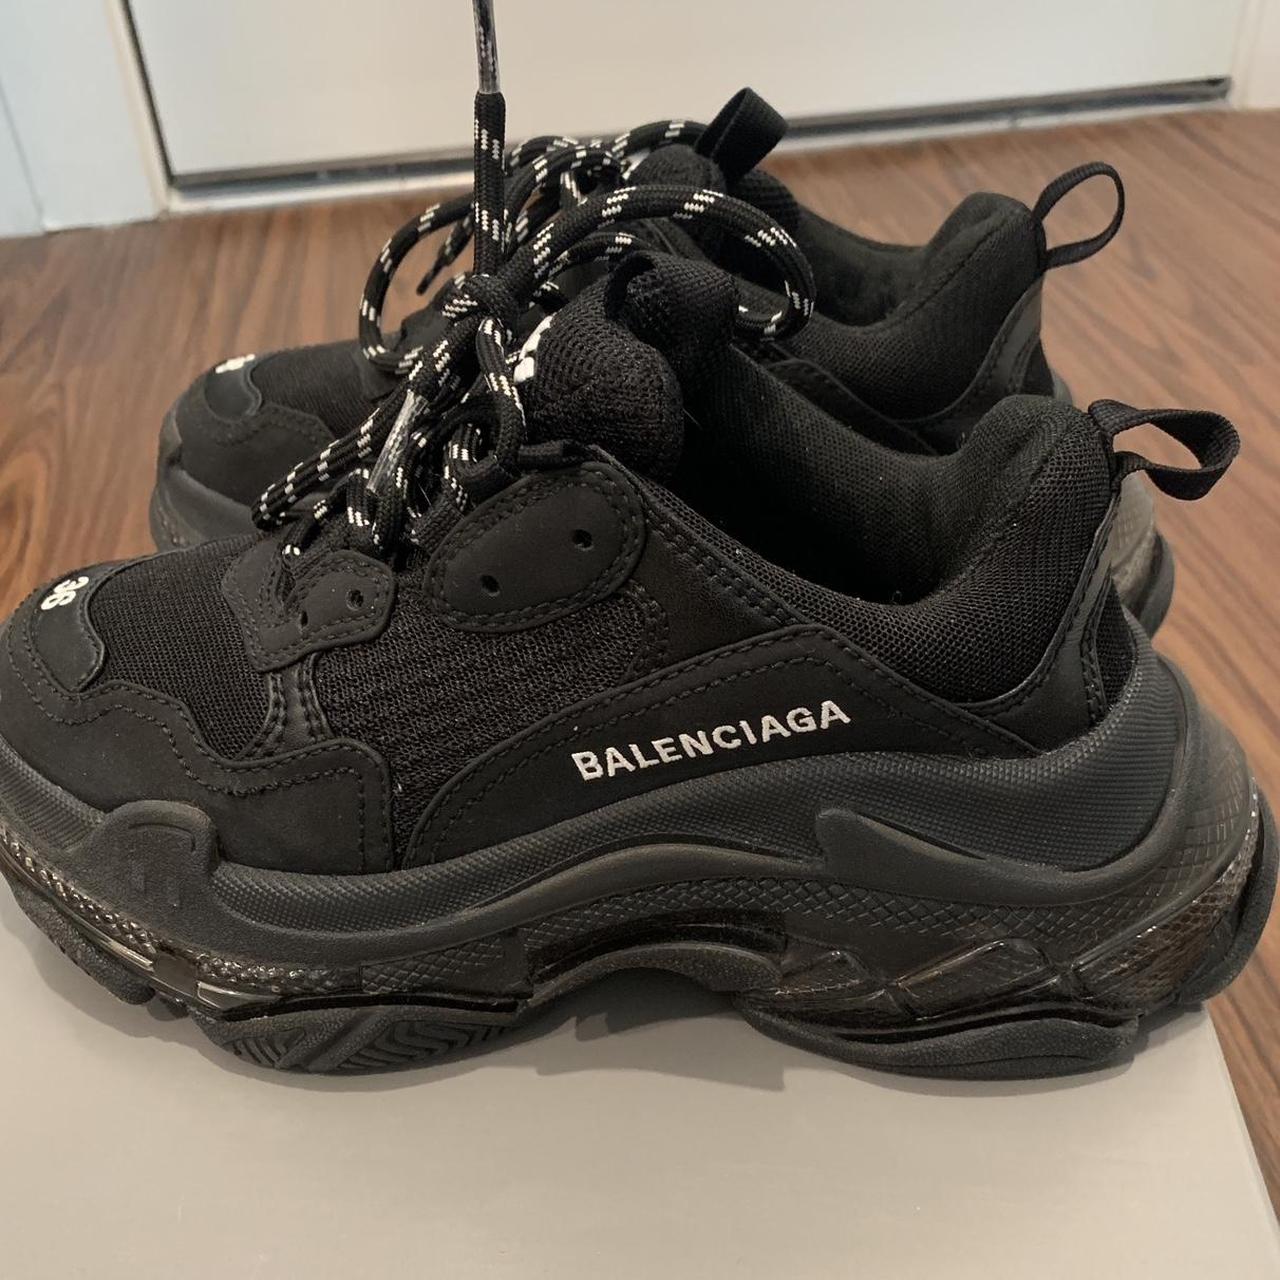 Người Trung Quốc chỉ trích mẫu giày rách bẩn của Balenciaga